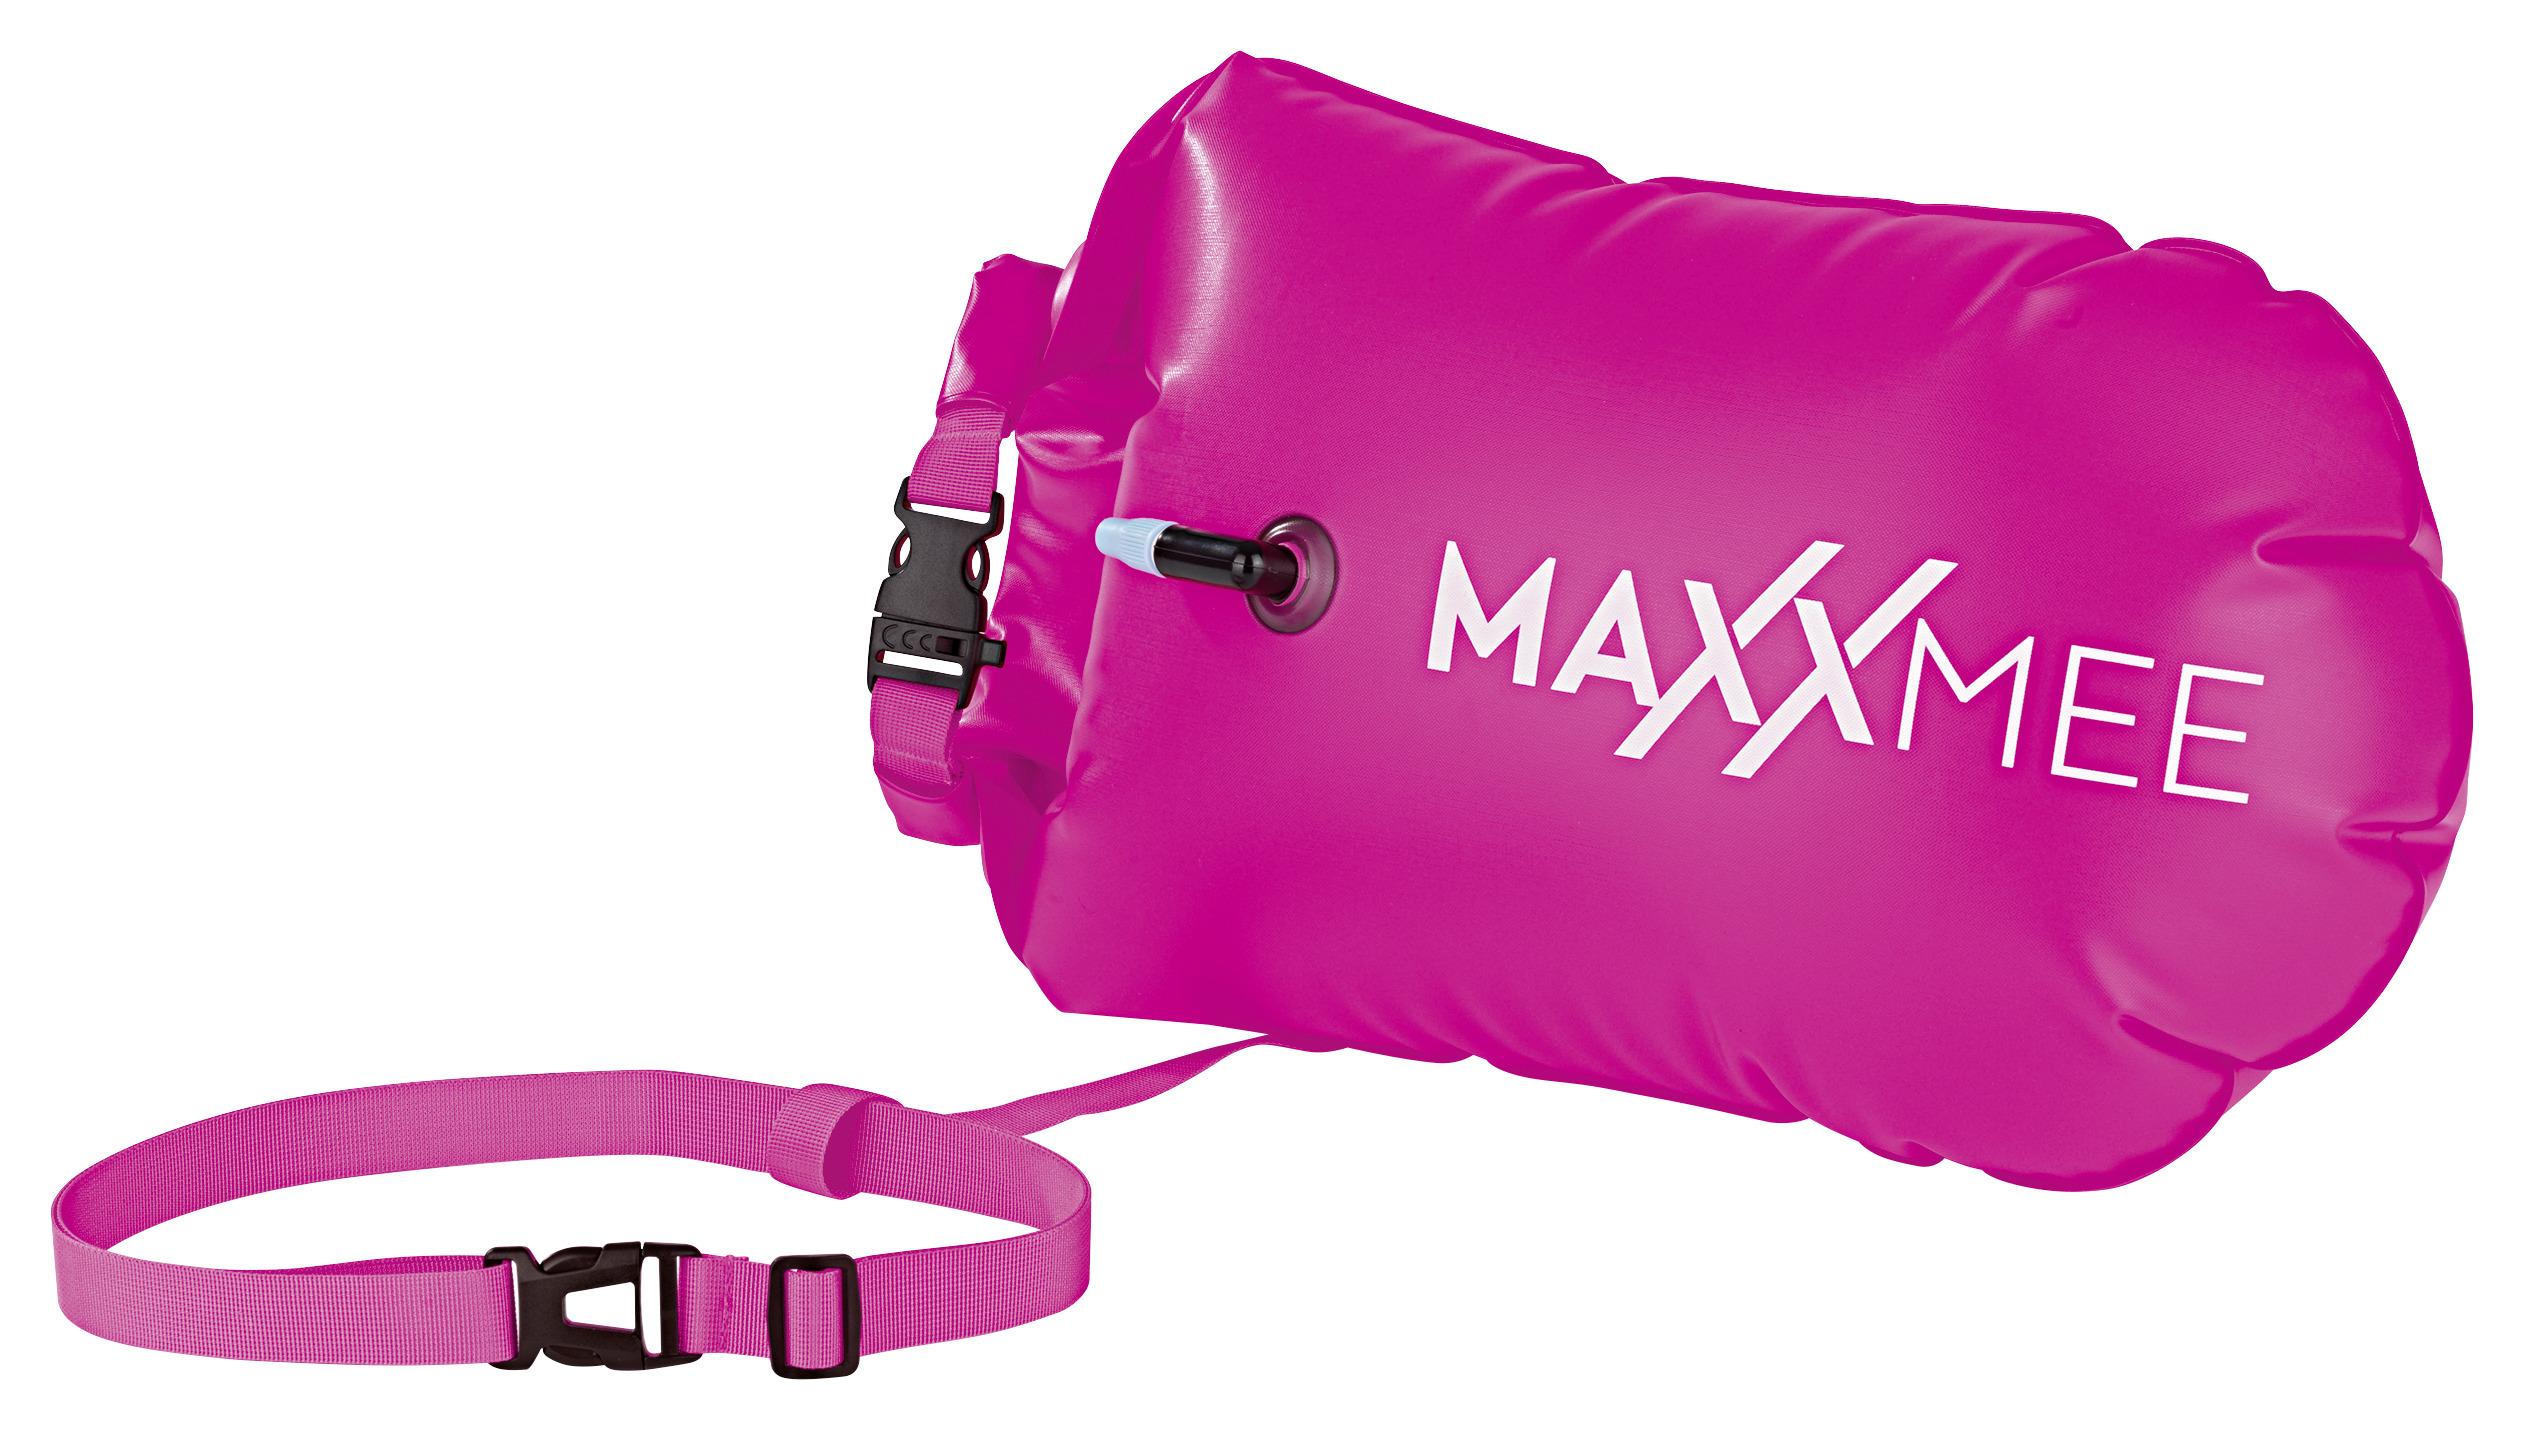 Schwimmkissen Maxxmee Schwimmboje Pink - Pink, Basics, Kunststoff (37,5/72cm)